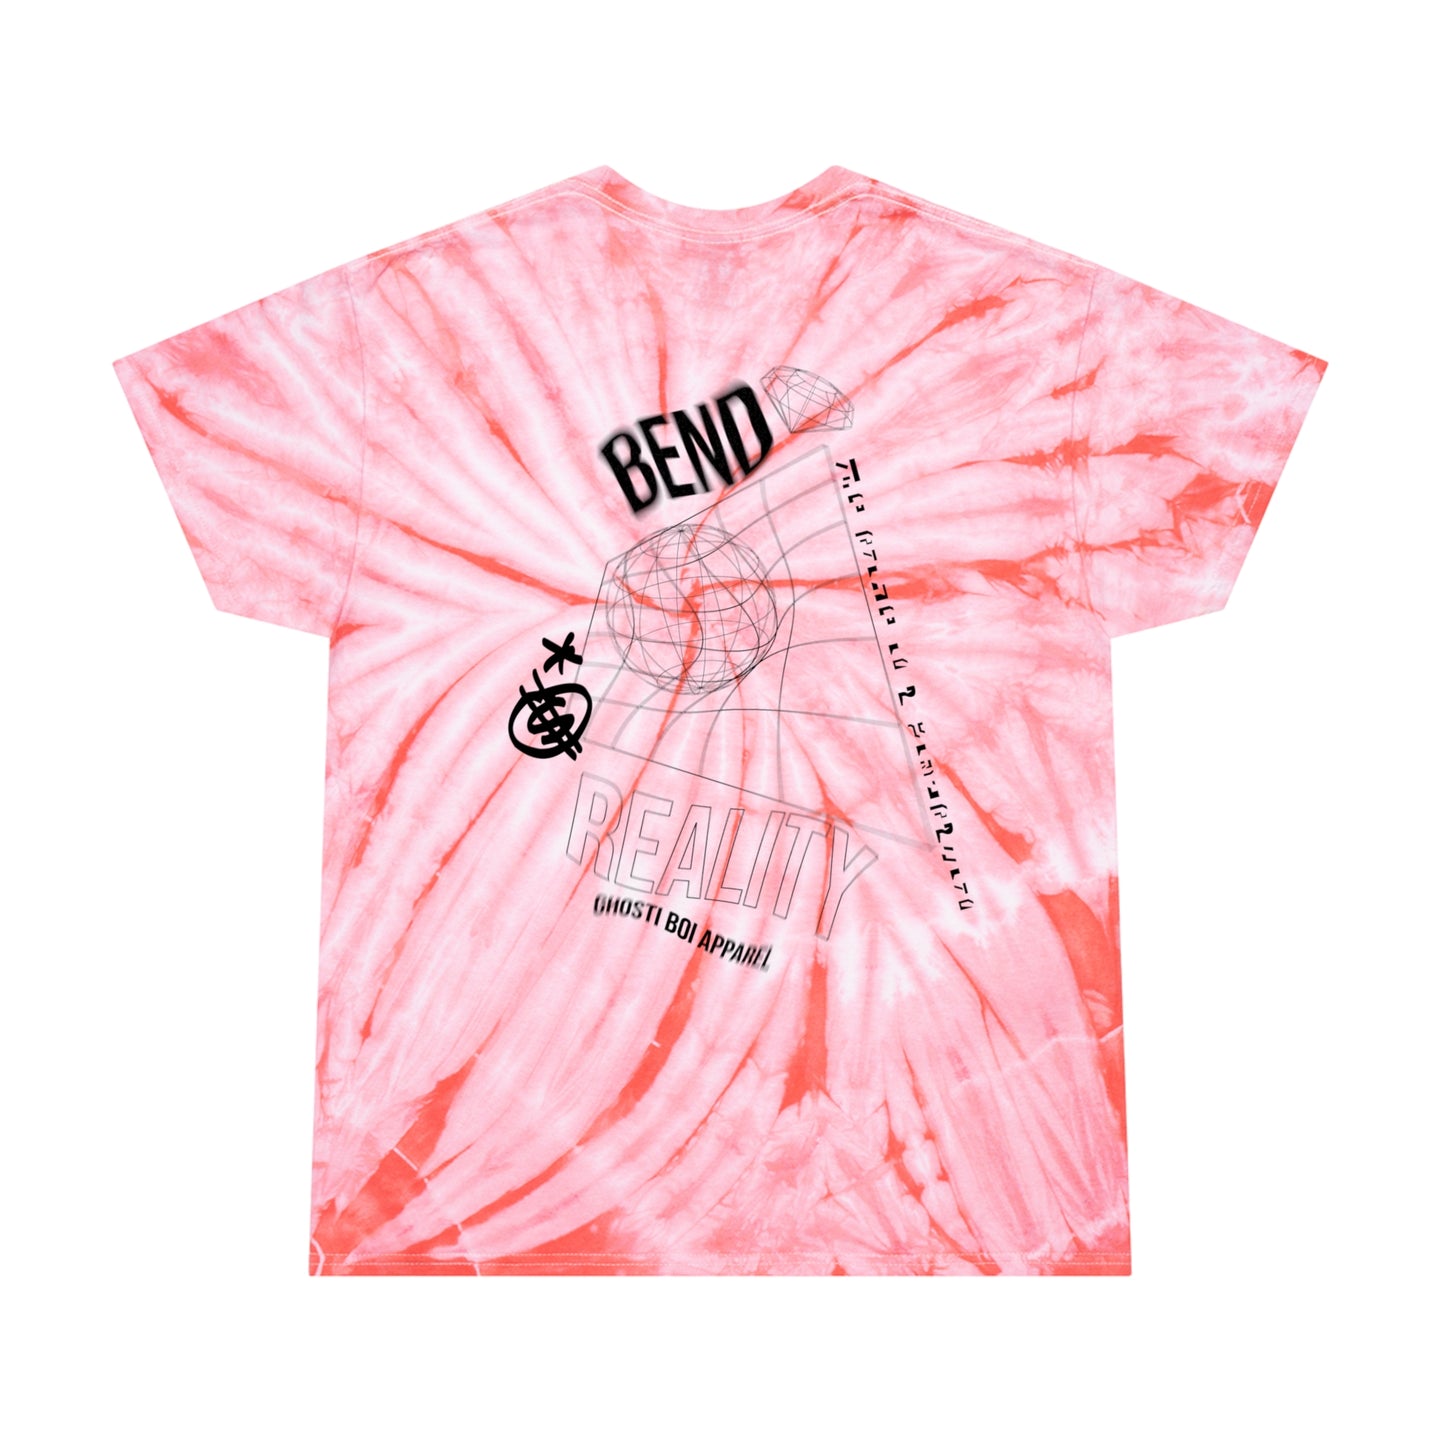 Bend Reality Tie-Dye T-Shirt